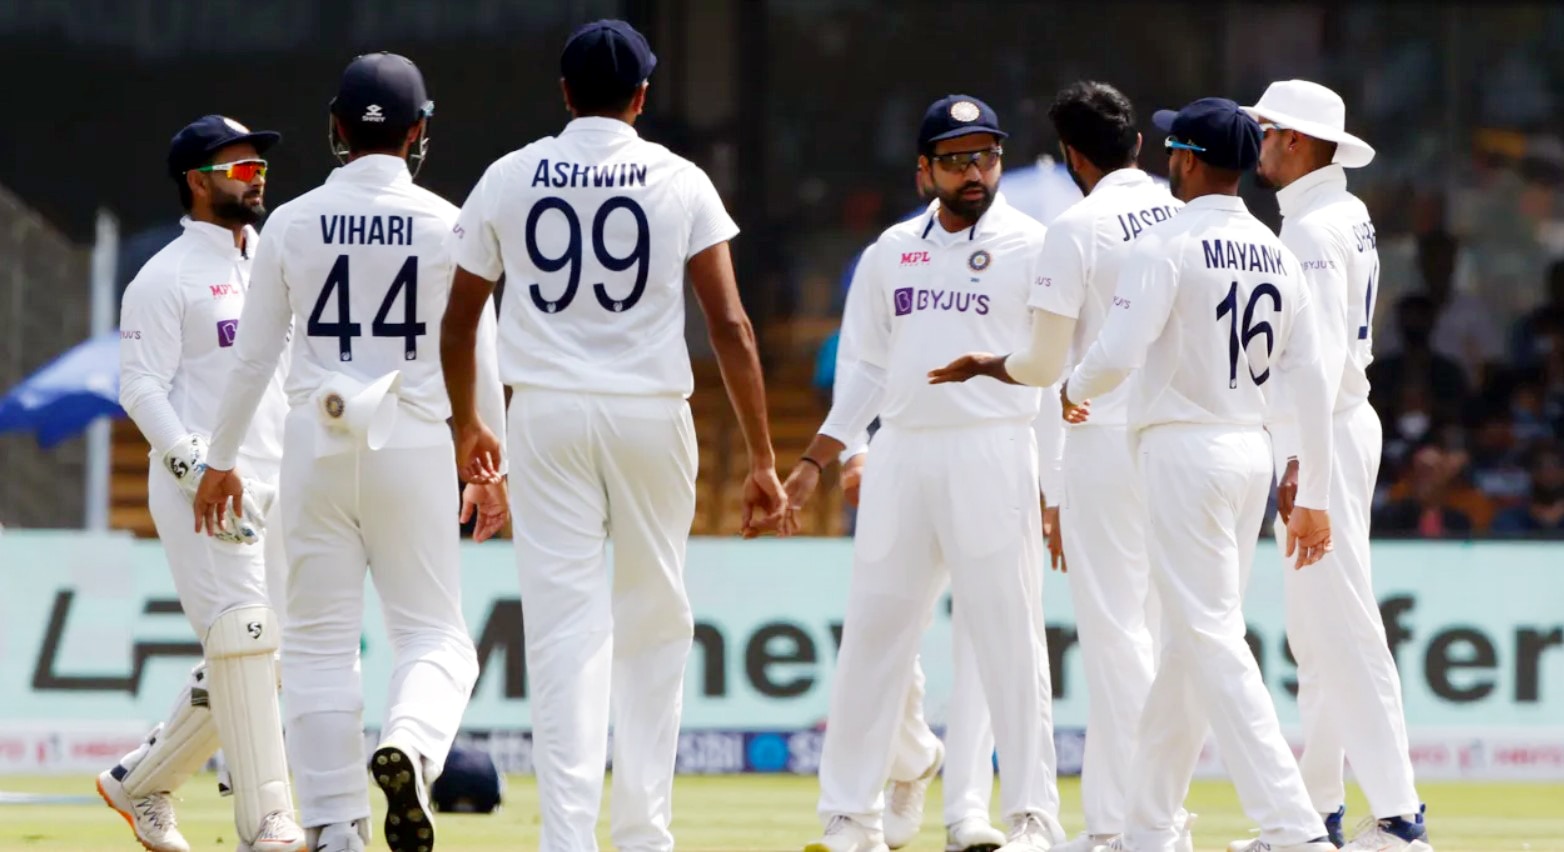 IND vs AUS: इस दिग्गज ने चुनी ऑस्ट्रेलिया के खिलाफ पहले टेस्ट के लिए भारत की Playing 11, इन प्लेयर्स का काट दिया पत्ता